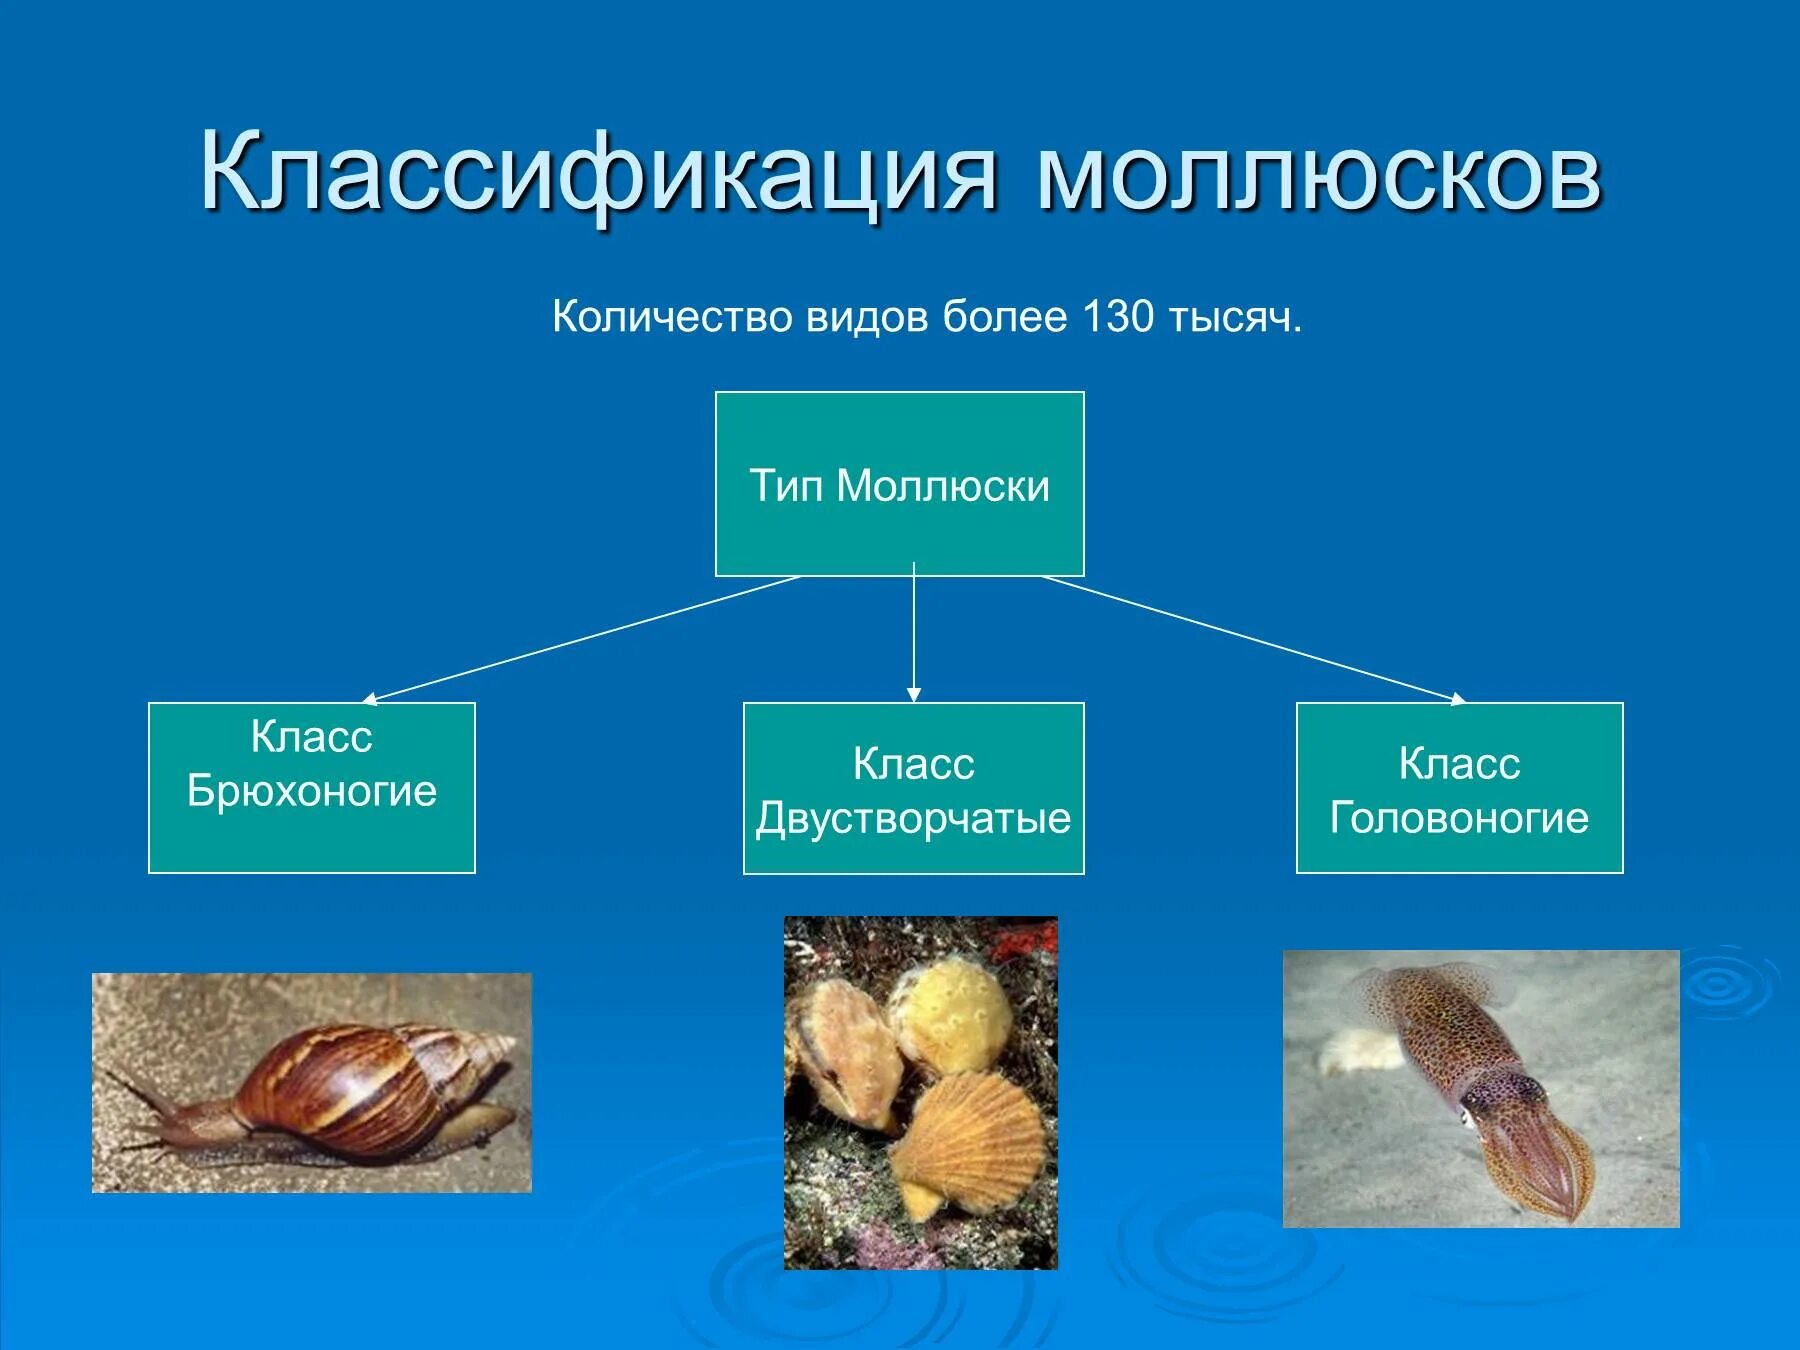 Систематика головоногих моллюсков таблица. Классификация брюхоногих моллюсков биология 7 класс. Двустворчатые моллюски систематика. Систематика головоногих моллюсков 7 класс. Типу моллюсков относят